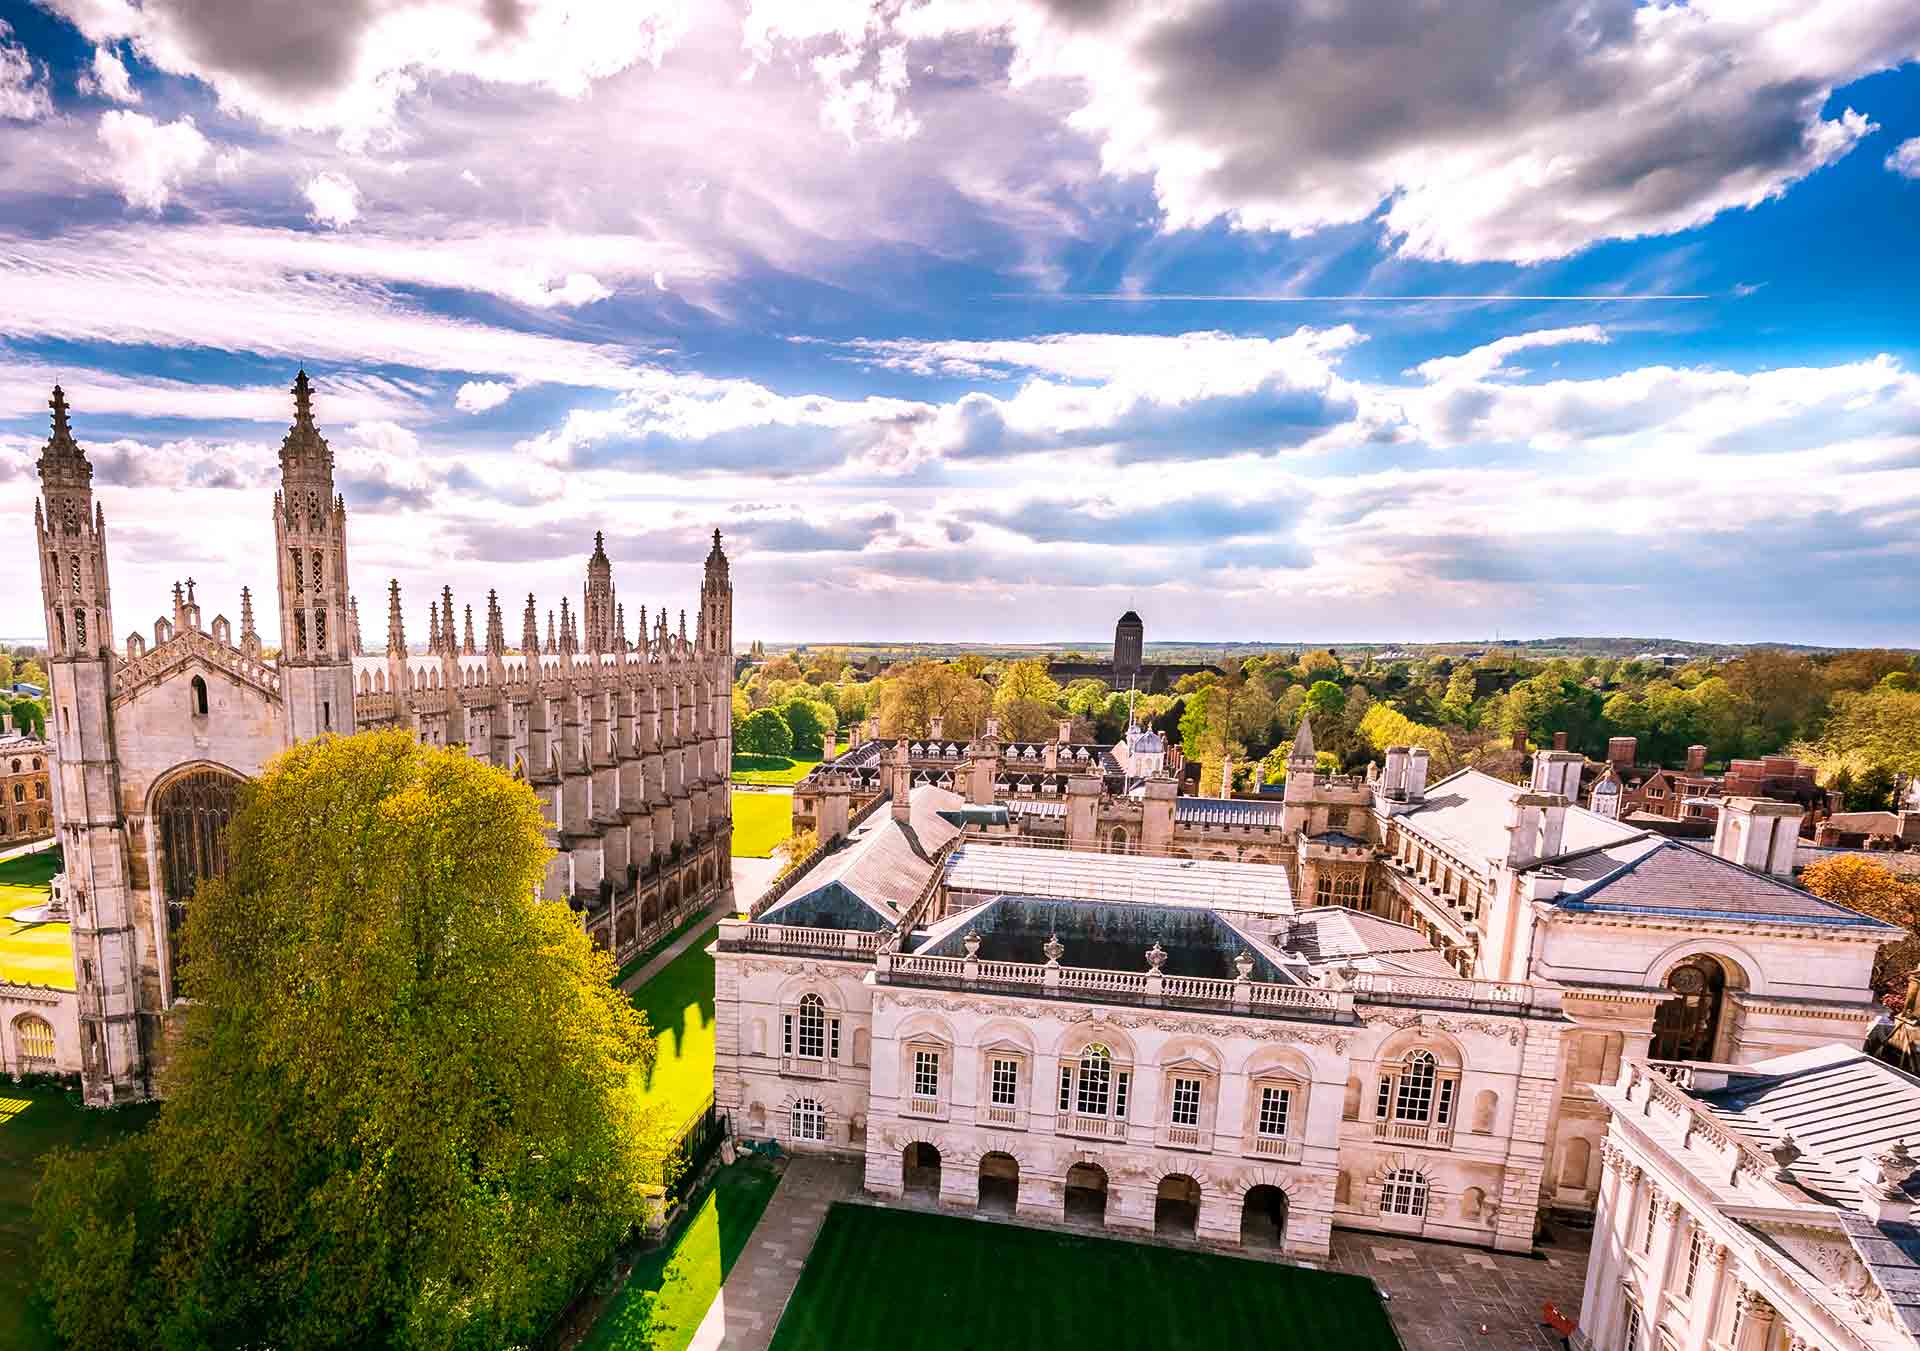 Cambridge university was founded. Кембриджский университет Кембридж. Кембридж университет 1209. Кембридж город в Великобритании. Университеты Англии Кембридж университет.